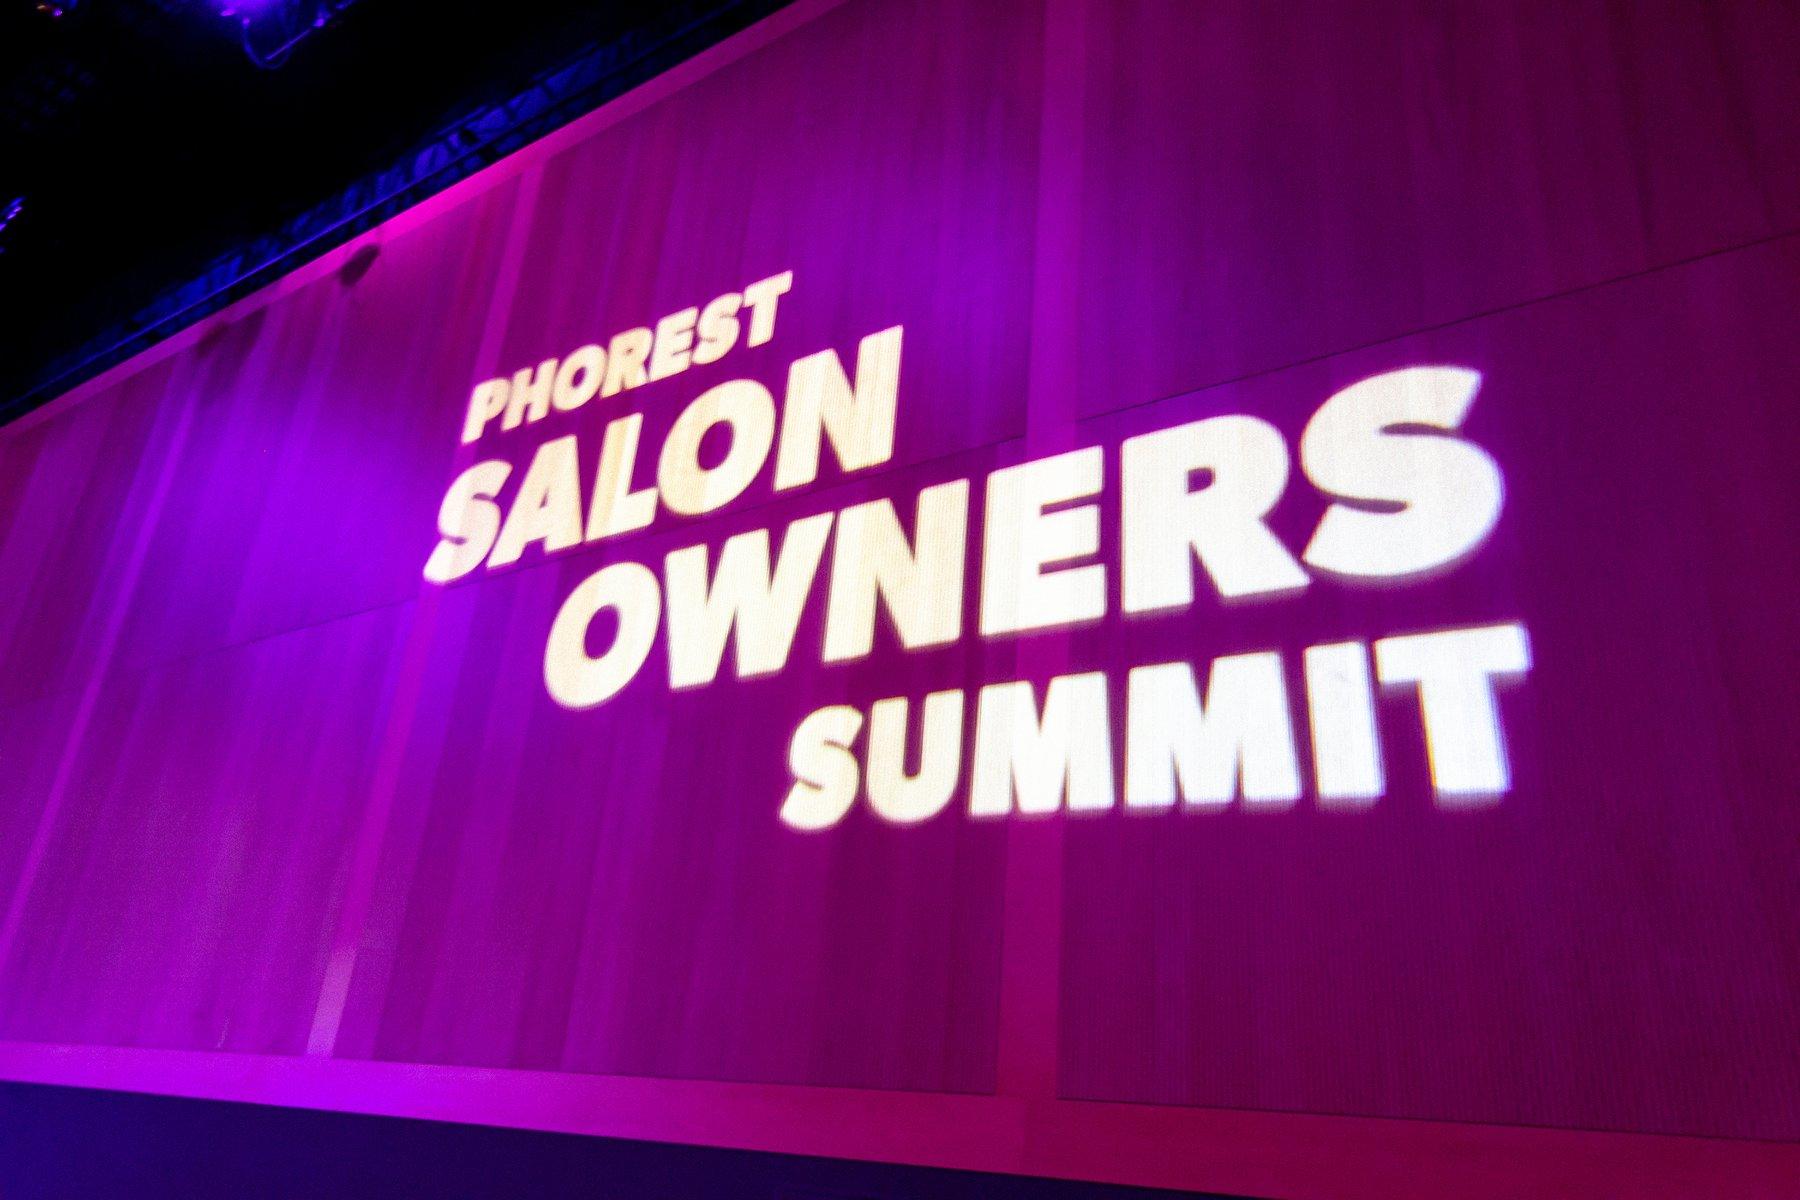 Phorest Salon Owners Summit 2019 – Inspiration und Motivation zum Jahresbeginn